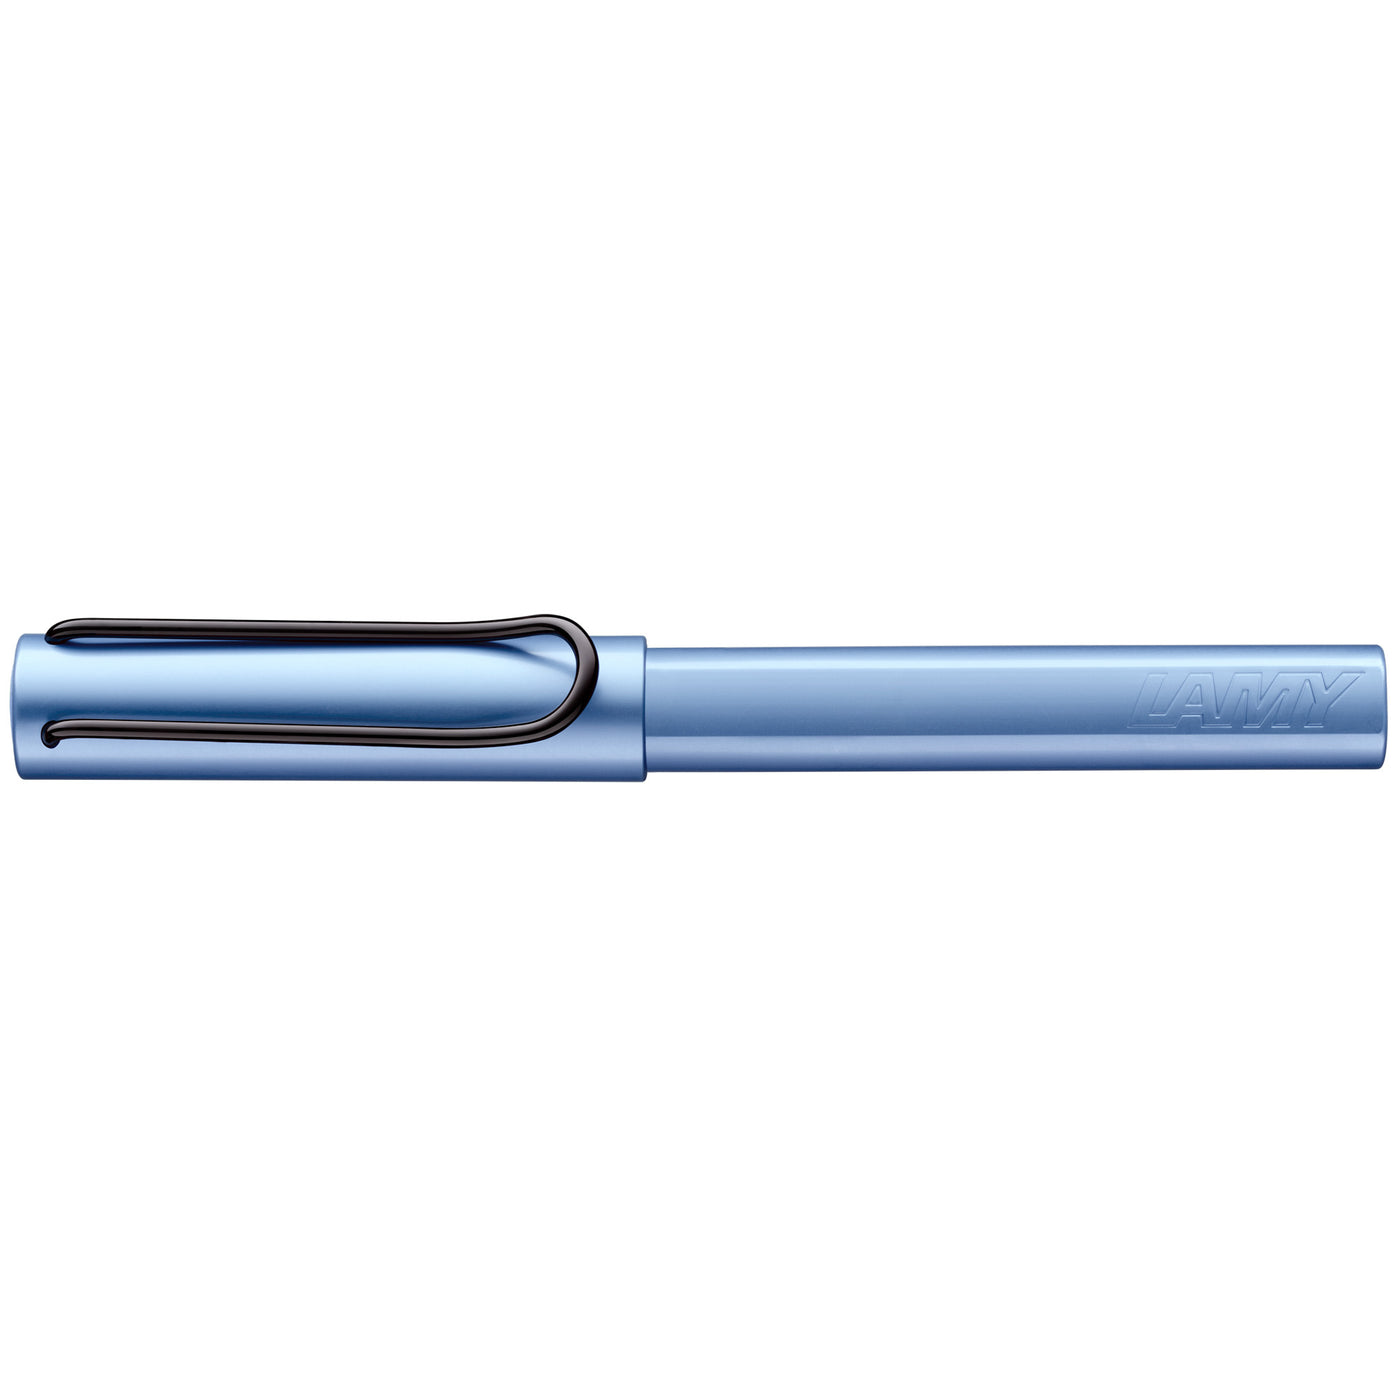 LAMY AL-star Special Edition Aquatic Rollerball Pen capped aluminum